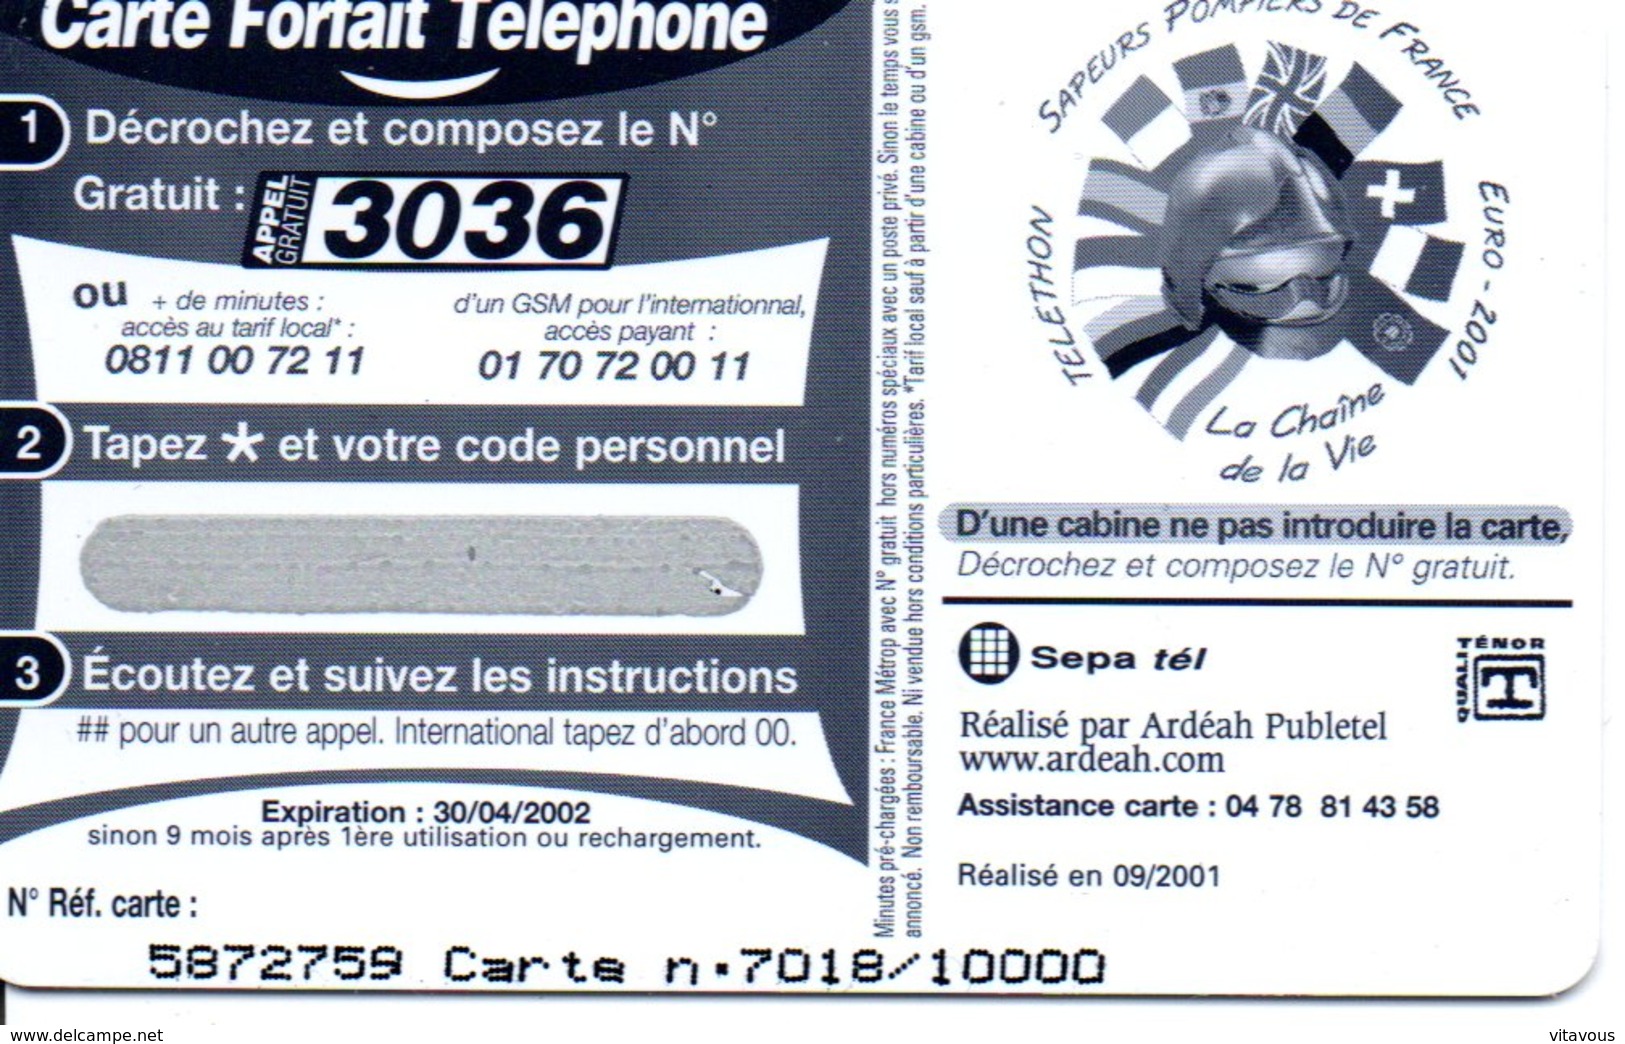 Pompier Fire Brigade Feuerwehr - Carte  Forfait Téléphone Card Luxe (G 610) - Feuerwehr